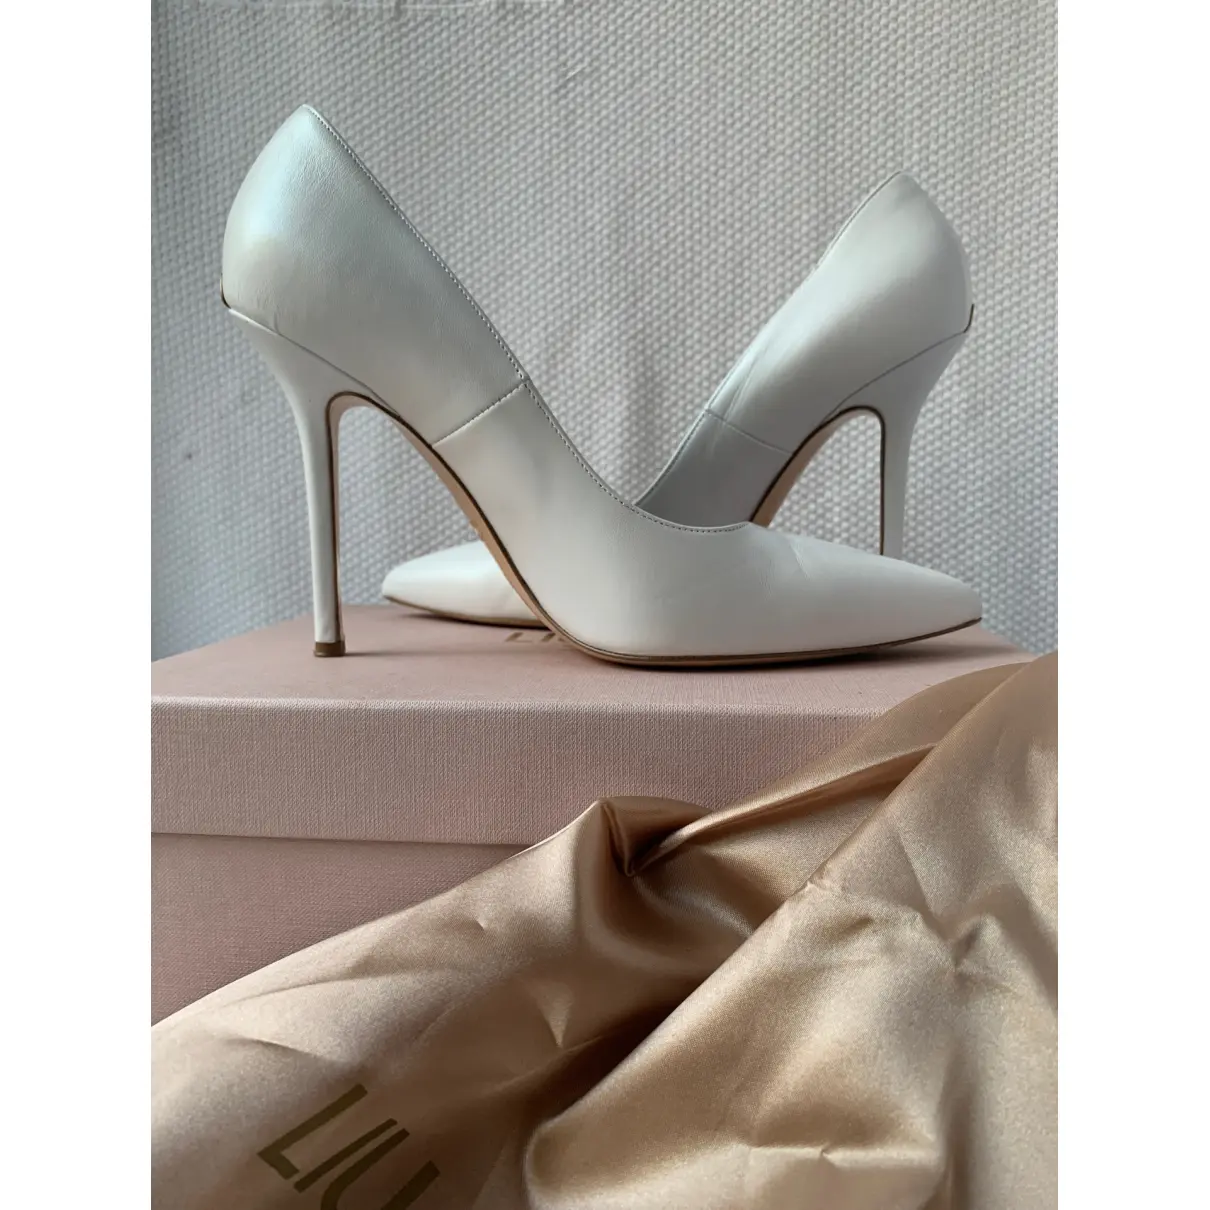 Buy Liu.Jo Leather heels online